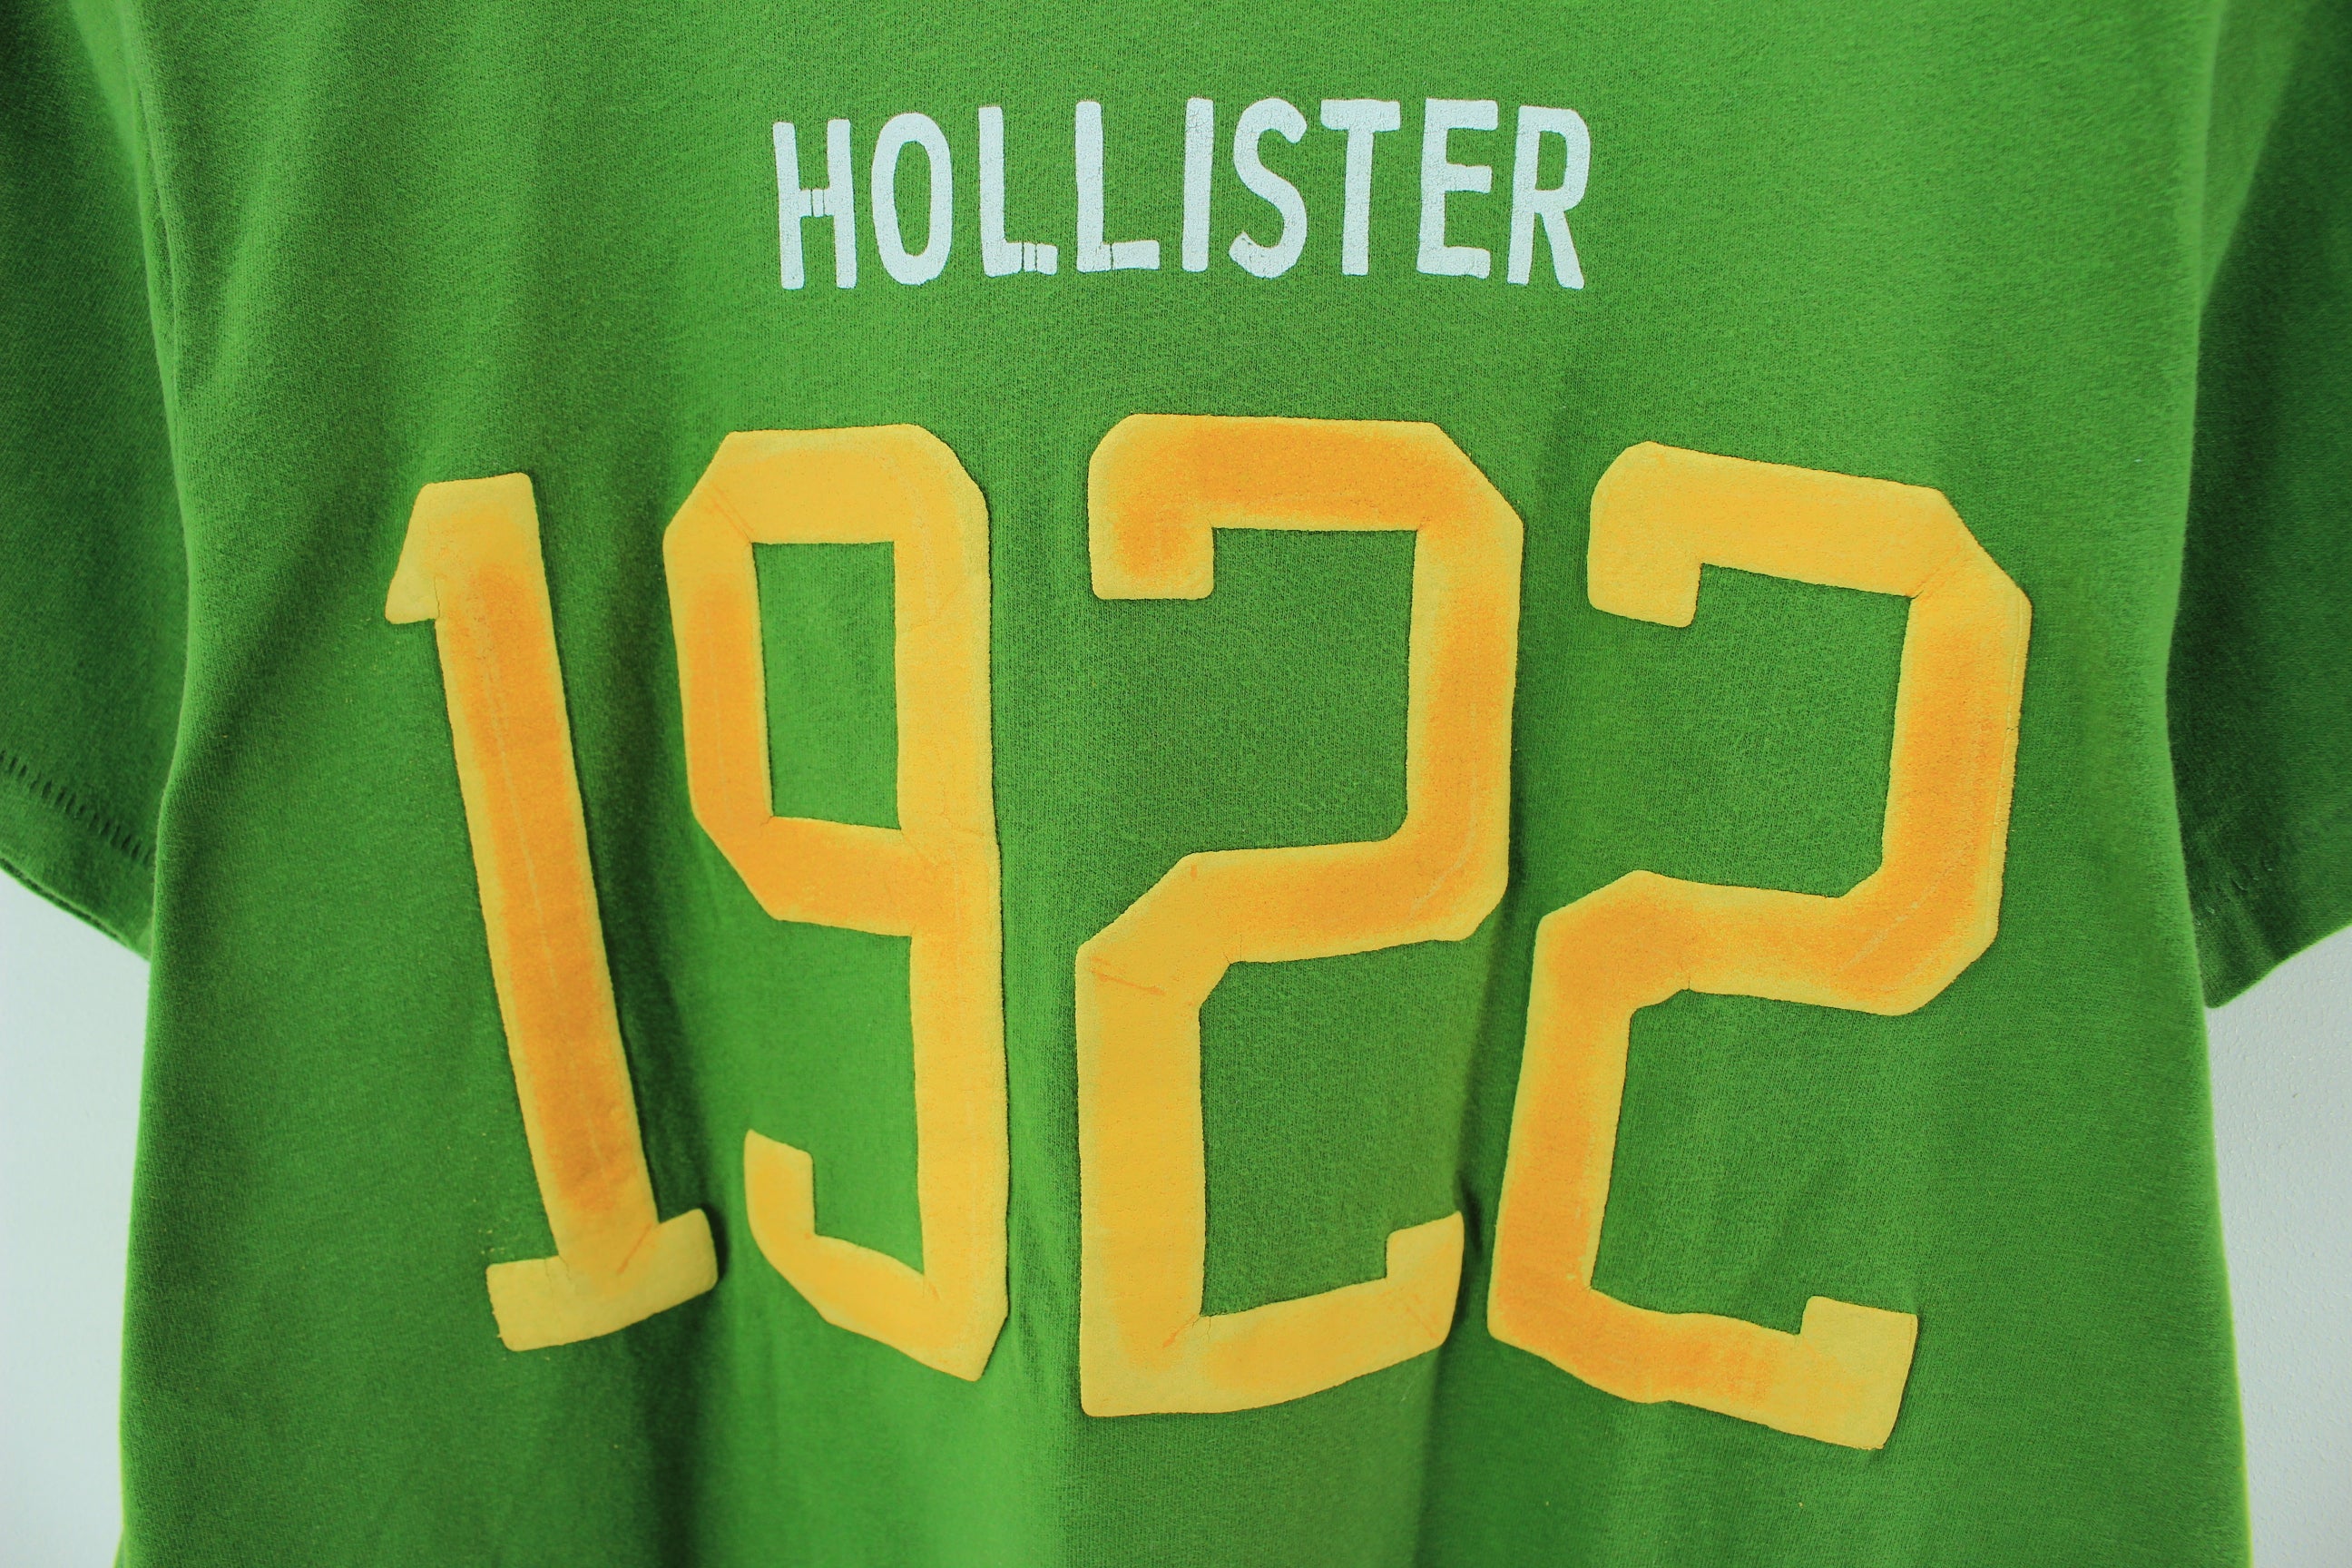 hollister 1922 t shirt